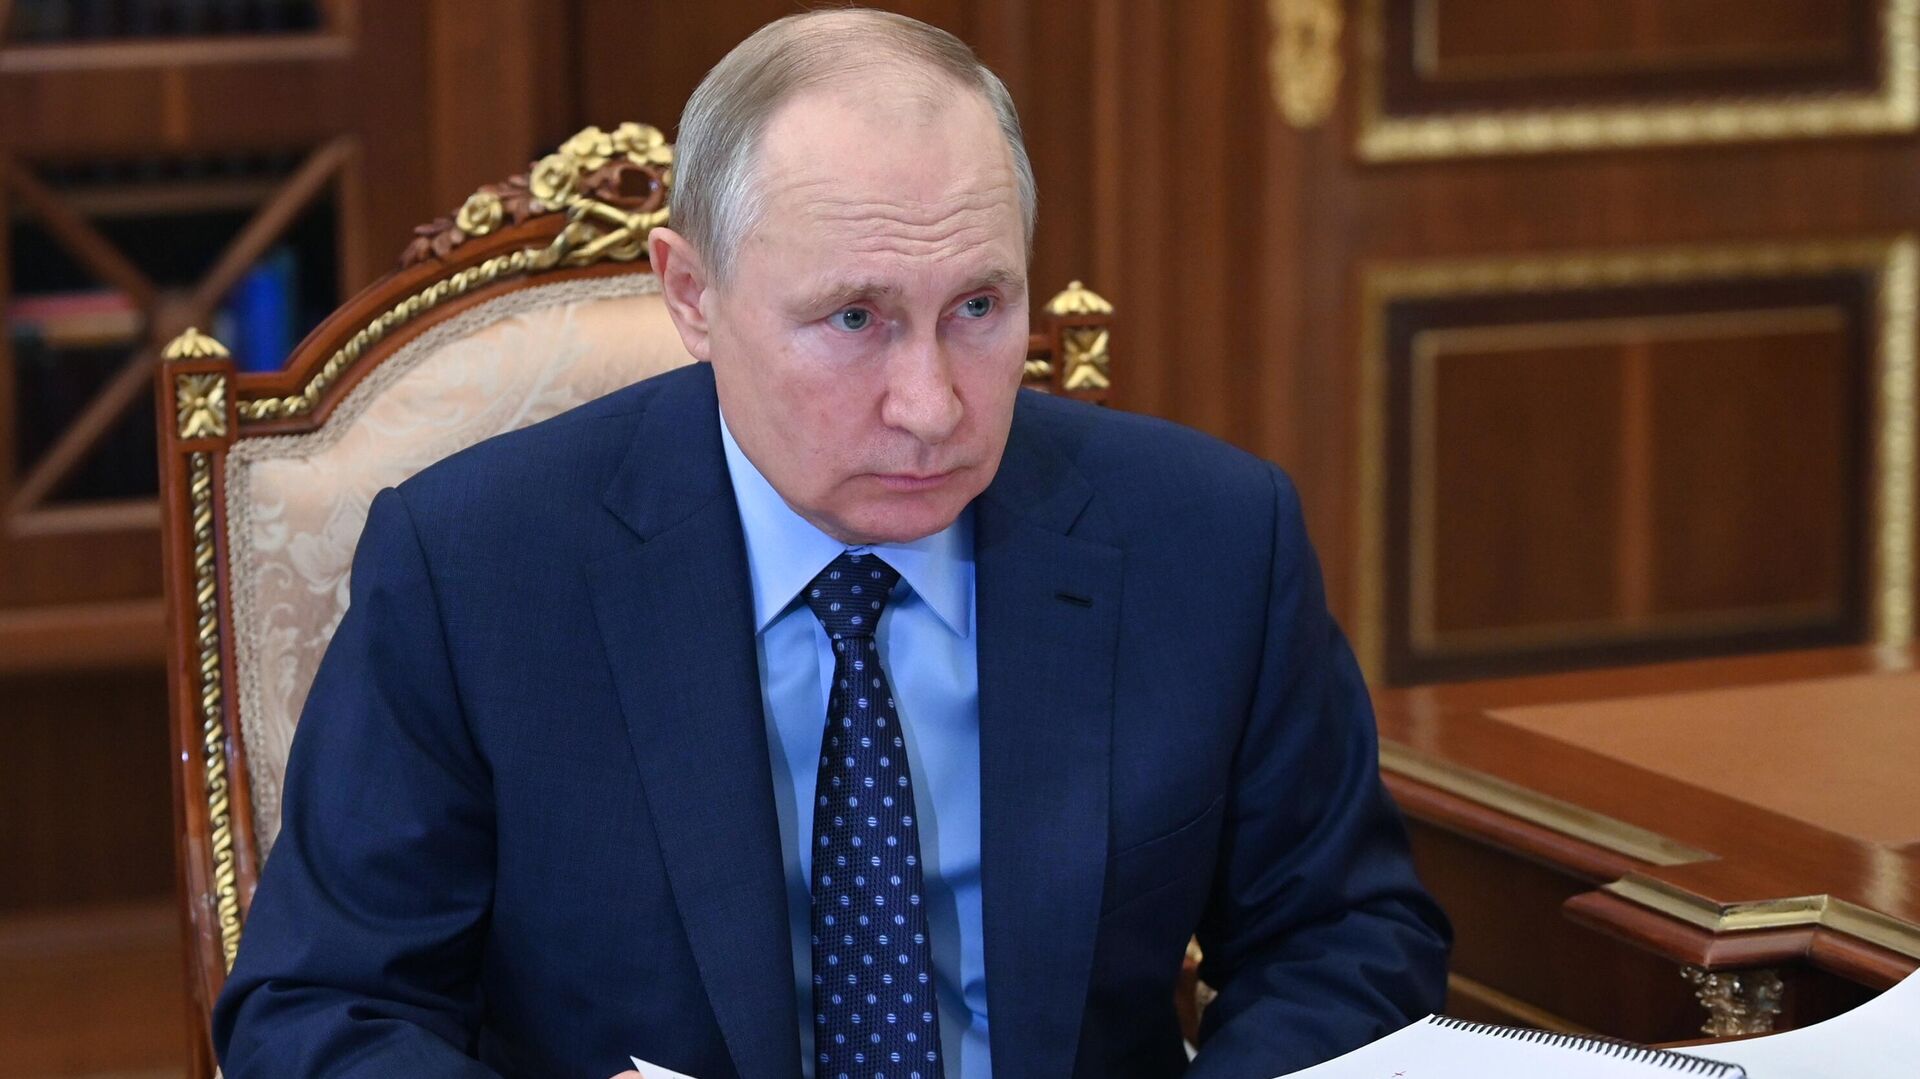 Путин призвал привлекать инвестиции в Ульяновскую область